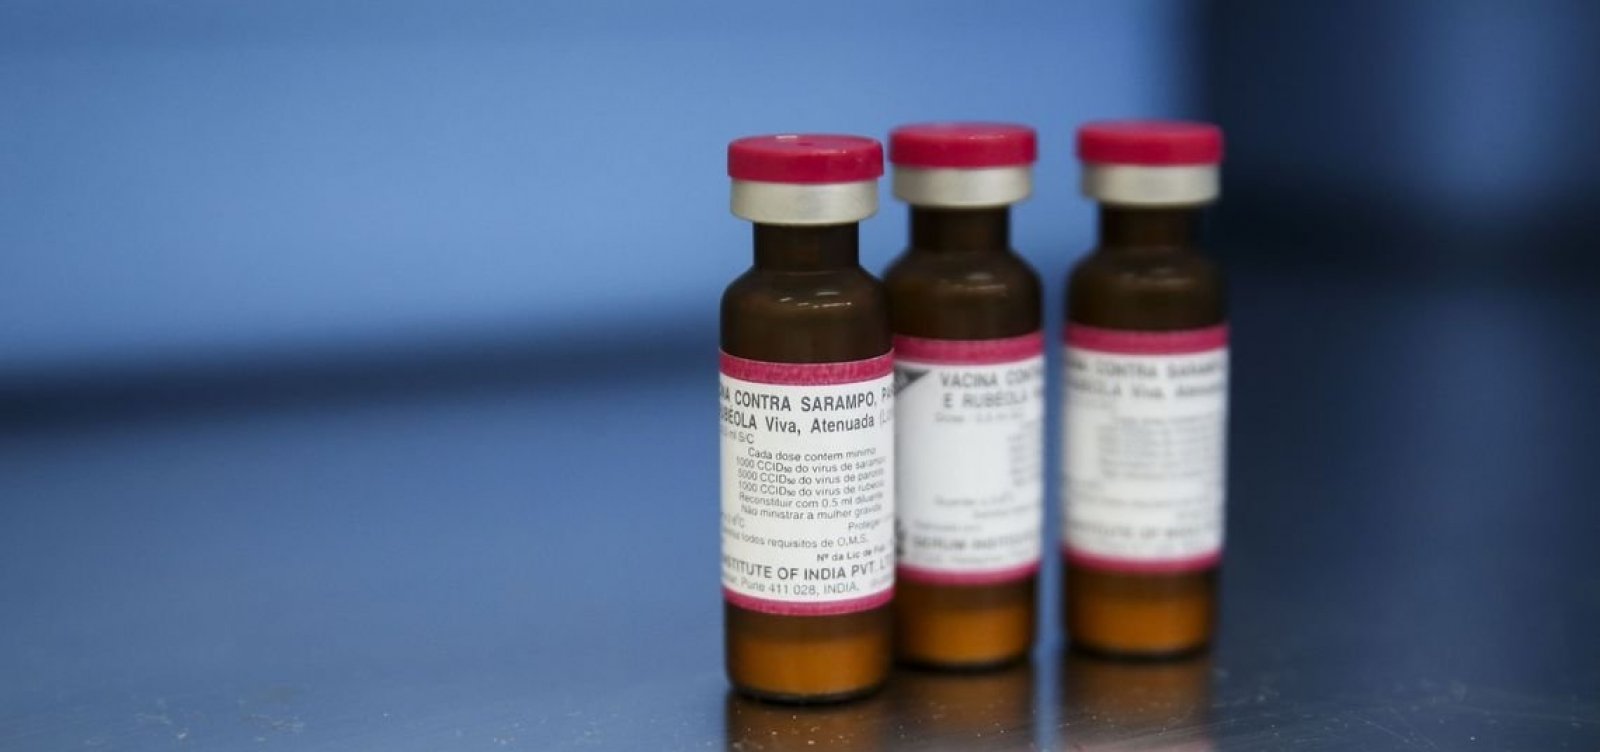 Campanha Nacional de Vacinação contra o Sarampo começa nesta segunda